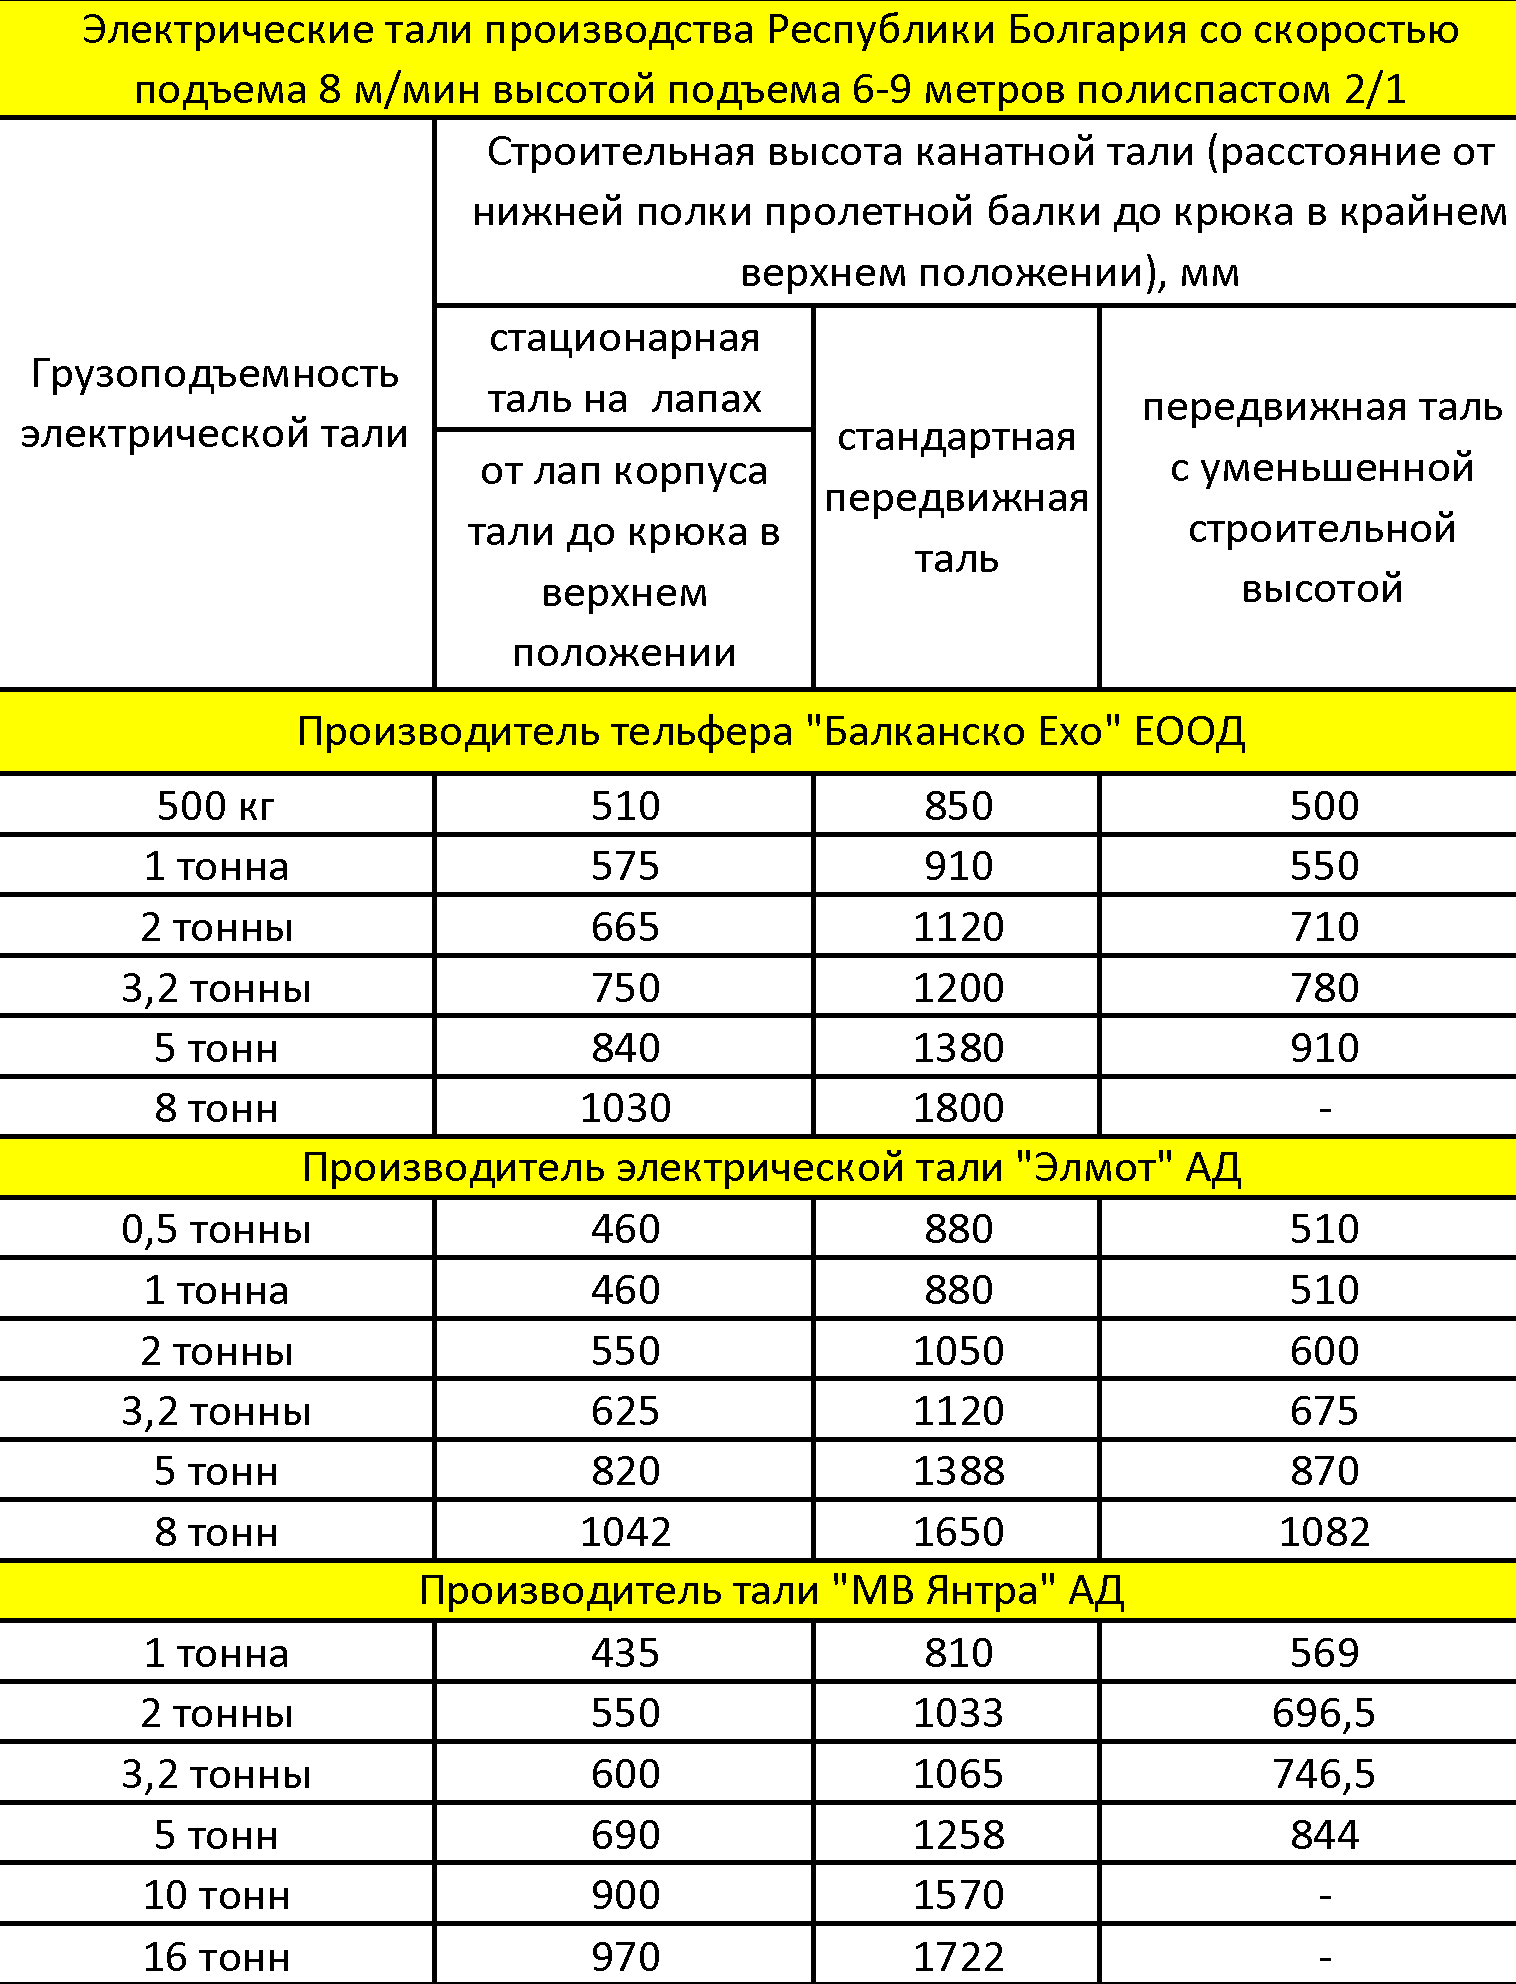 сравнение габаритов болгарских талей